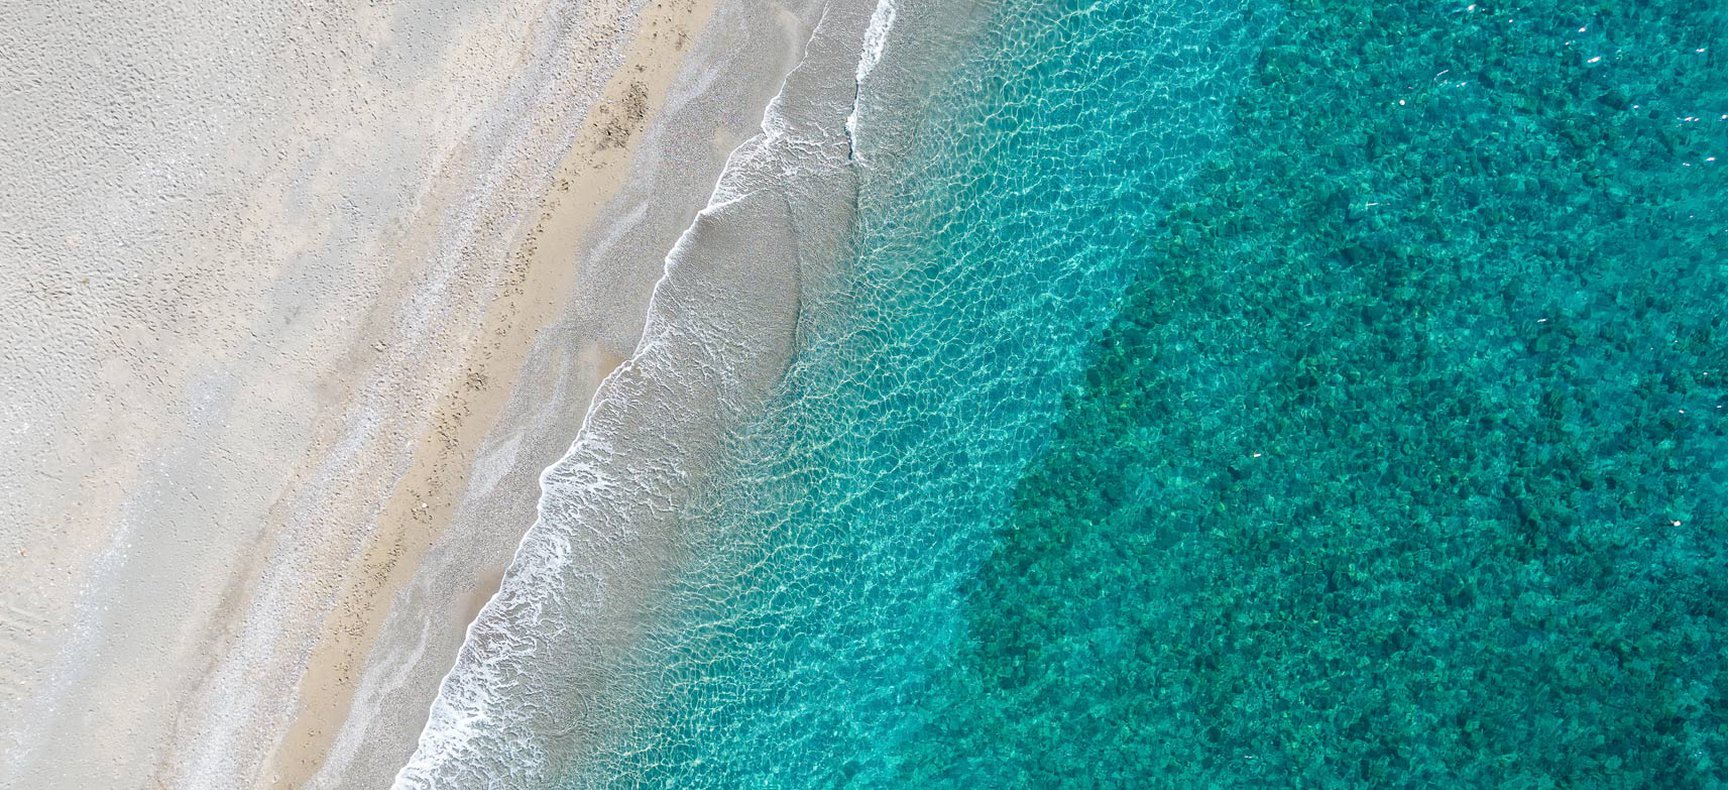 Beach with golden sand in Crete